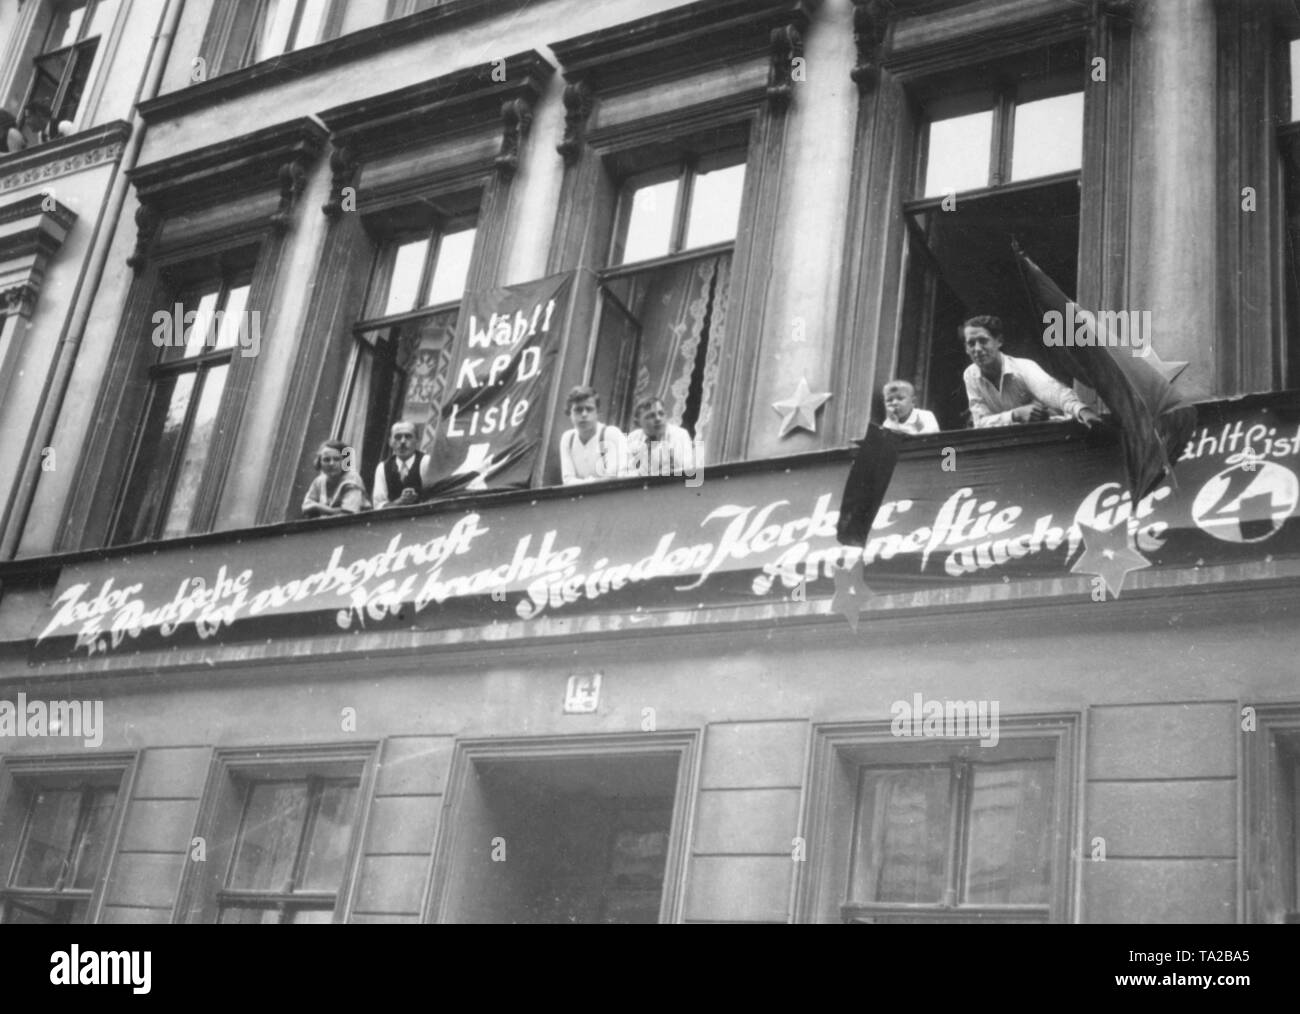 Für den Wahlkampf für den Reichstag die Wahl im Jahre 1930, Mitglieder der KPD eingerichtet diese Fassaden in der Koeslinerstrasse mit Fahnen, Sterne und Slogans. Die Inschrift lautet: "Jeder vierte Deutsche hat überführt worden. Elend hat sie in den Kerker gebracht, Amnesty auch für Sie." Die Bewohner beobachten das Geschehen auf der Straße. Stockfoto